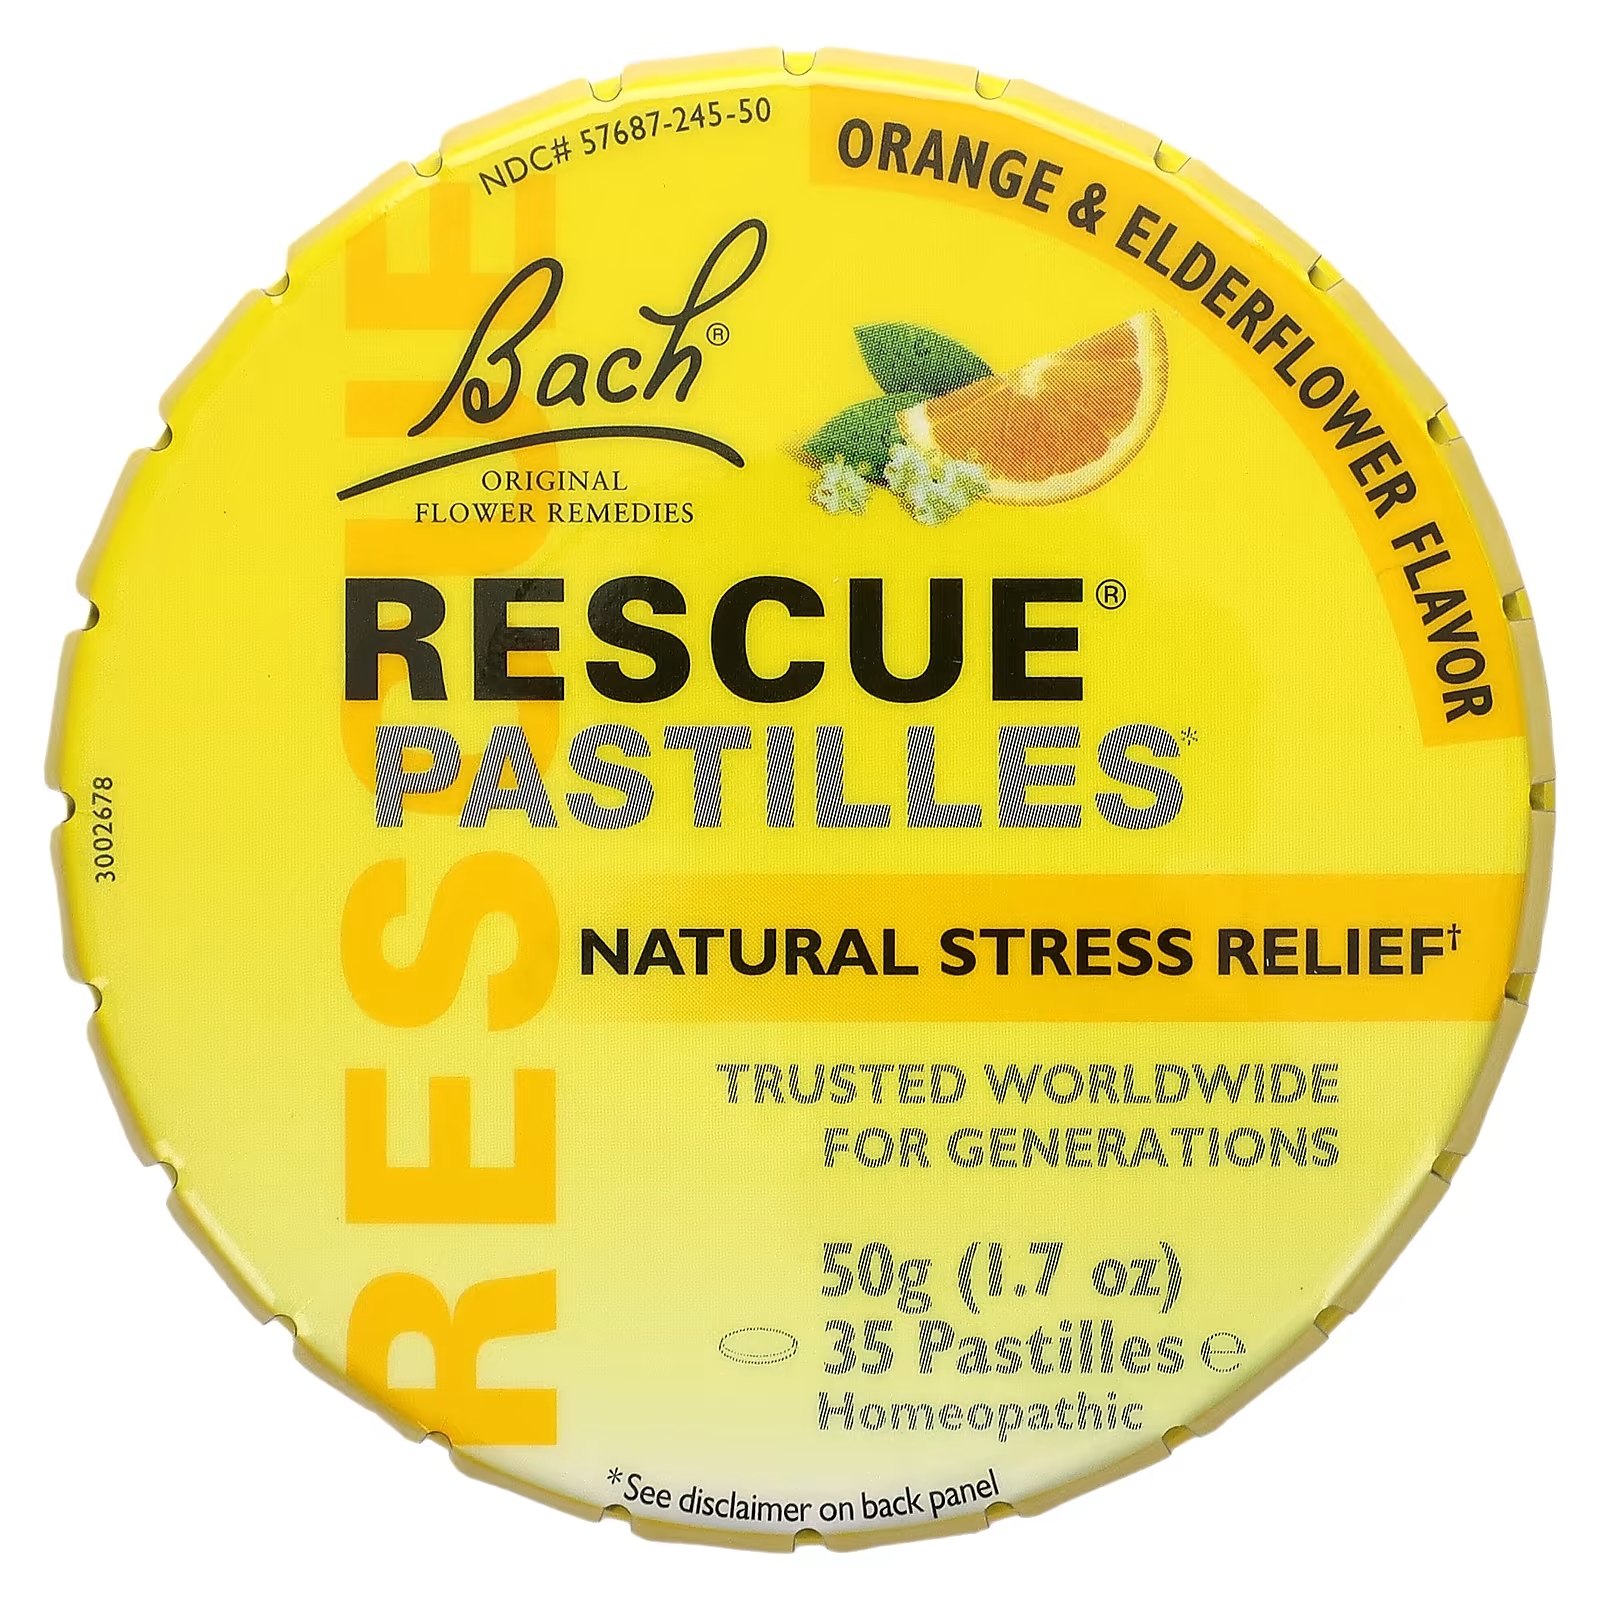 Bach Original Flower Remedies Rescue Pastilles натуральное средство от стресса апельсин и бузина, 35 пастилок